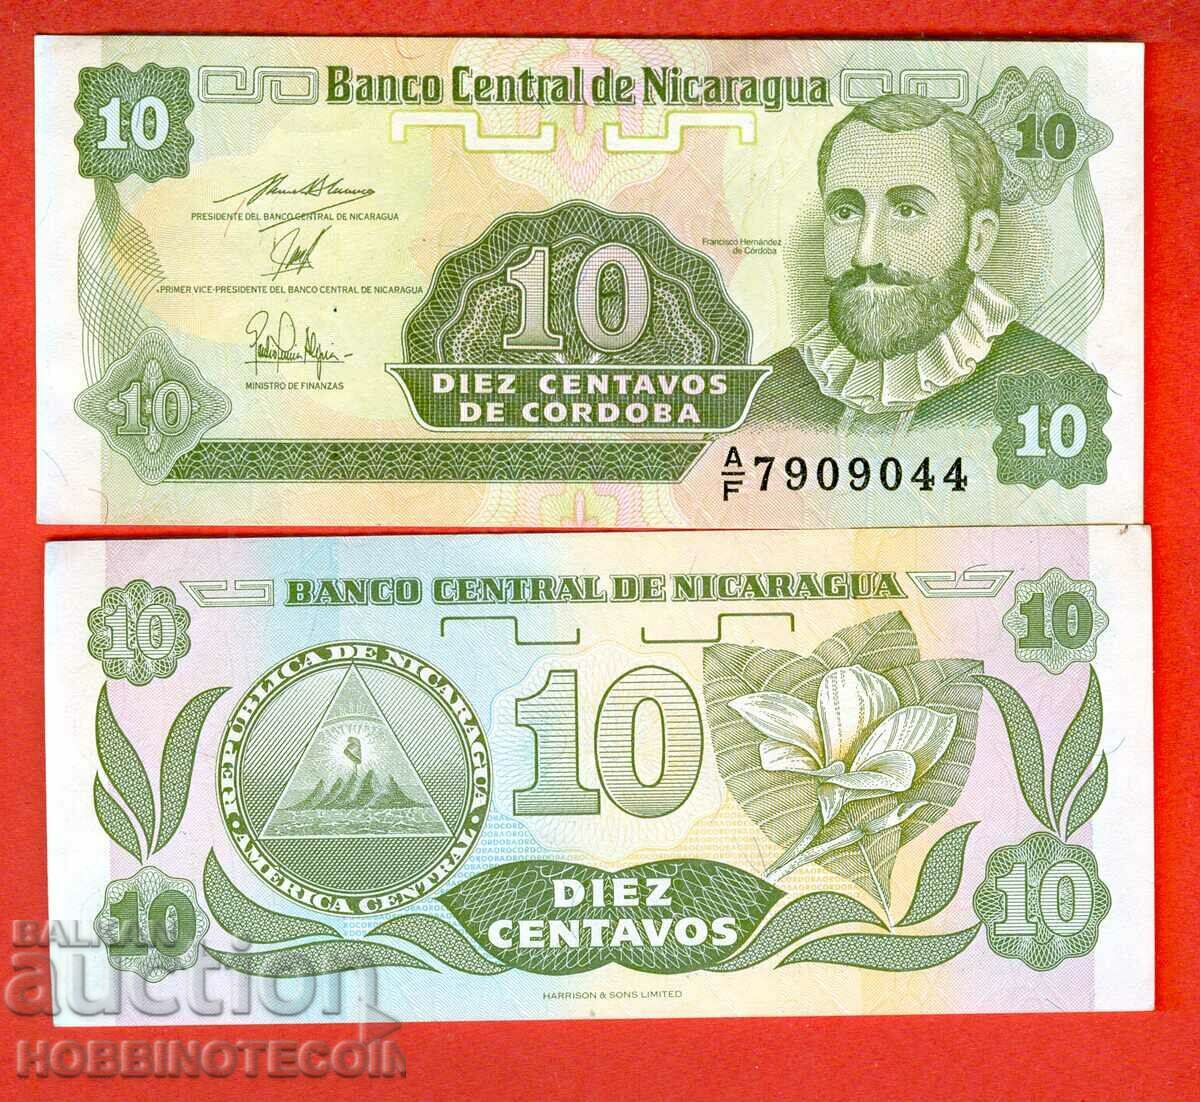 НИКАРАГУА NICARAGUA 10 Центаво емисия issue 1991 НОВА UNC